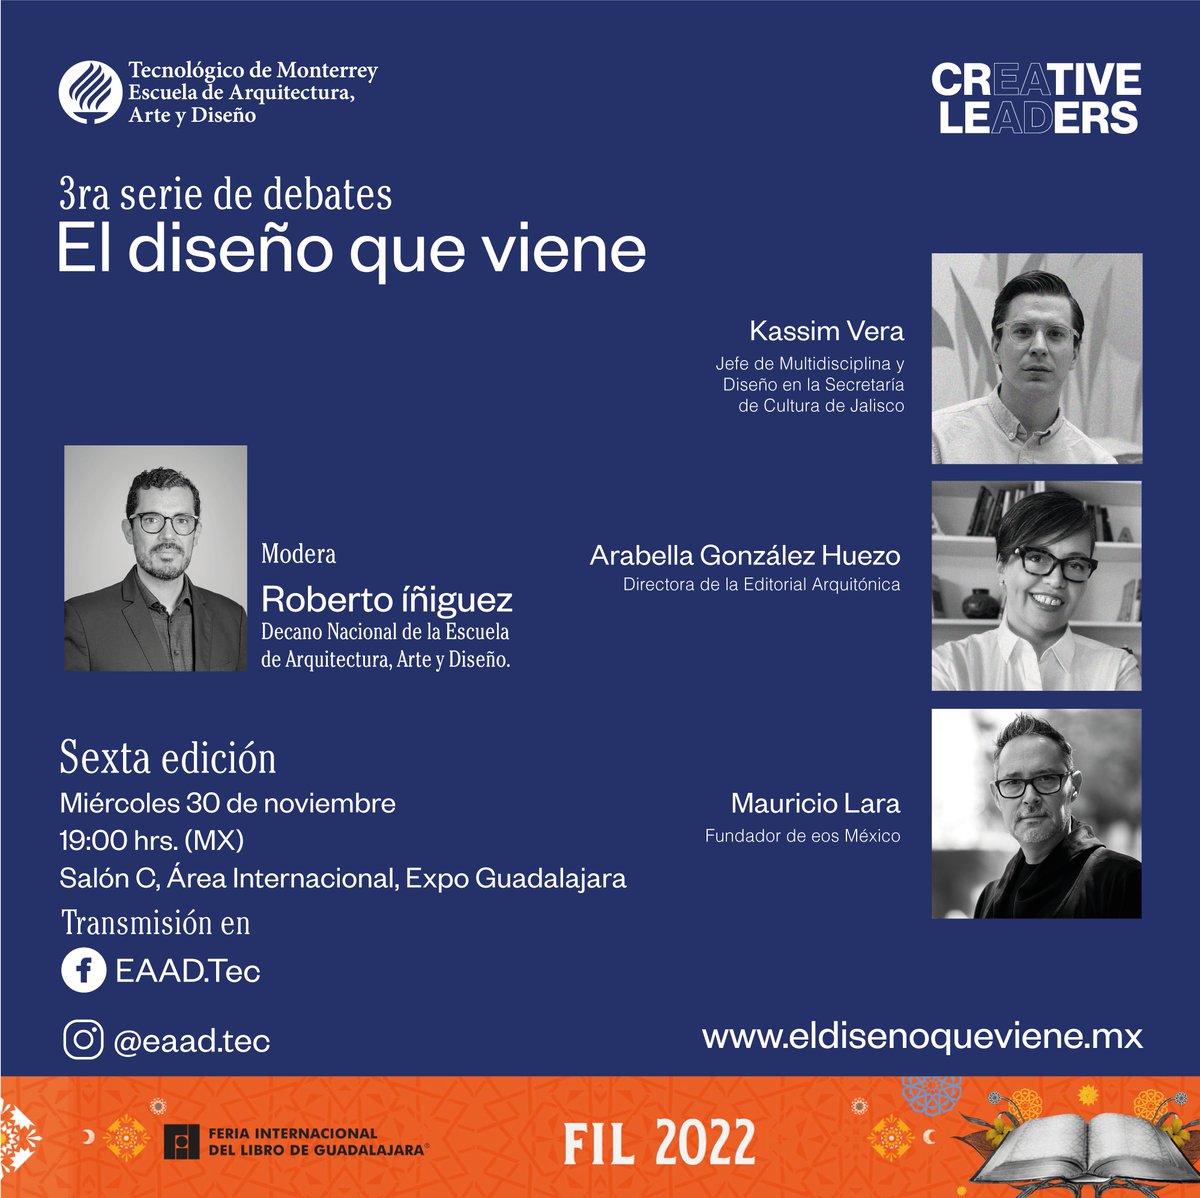 Mañana en la @FILGuadalajara en la presentación del nuevo libro de la @EAAD_Tec del @TecdeMonterrey :